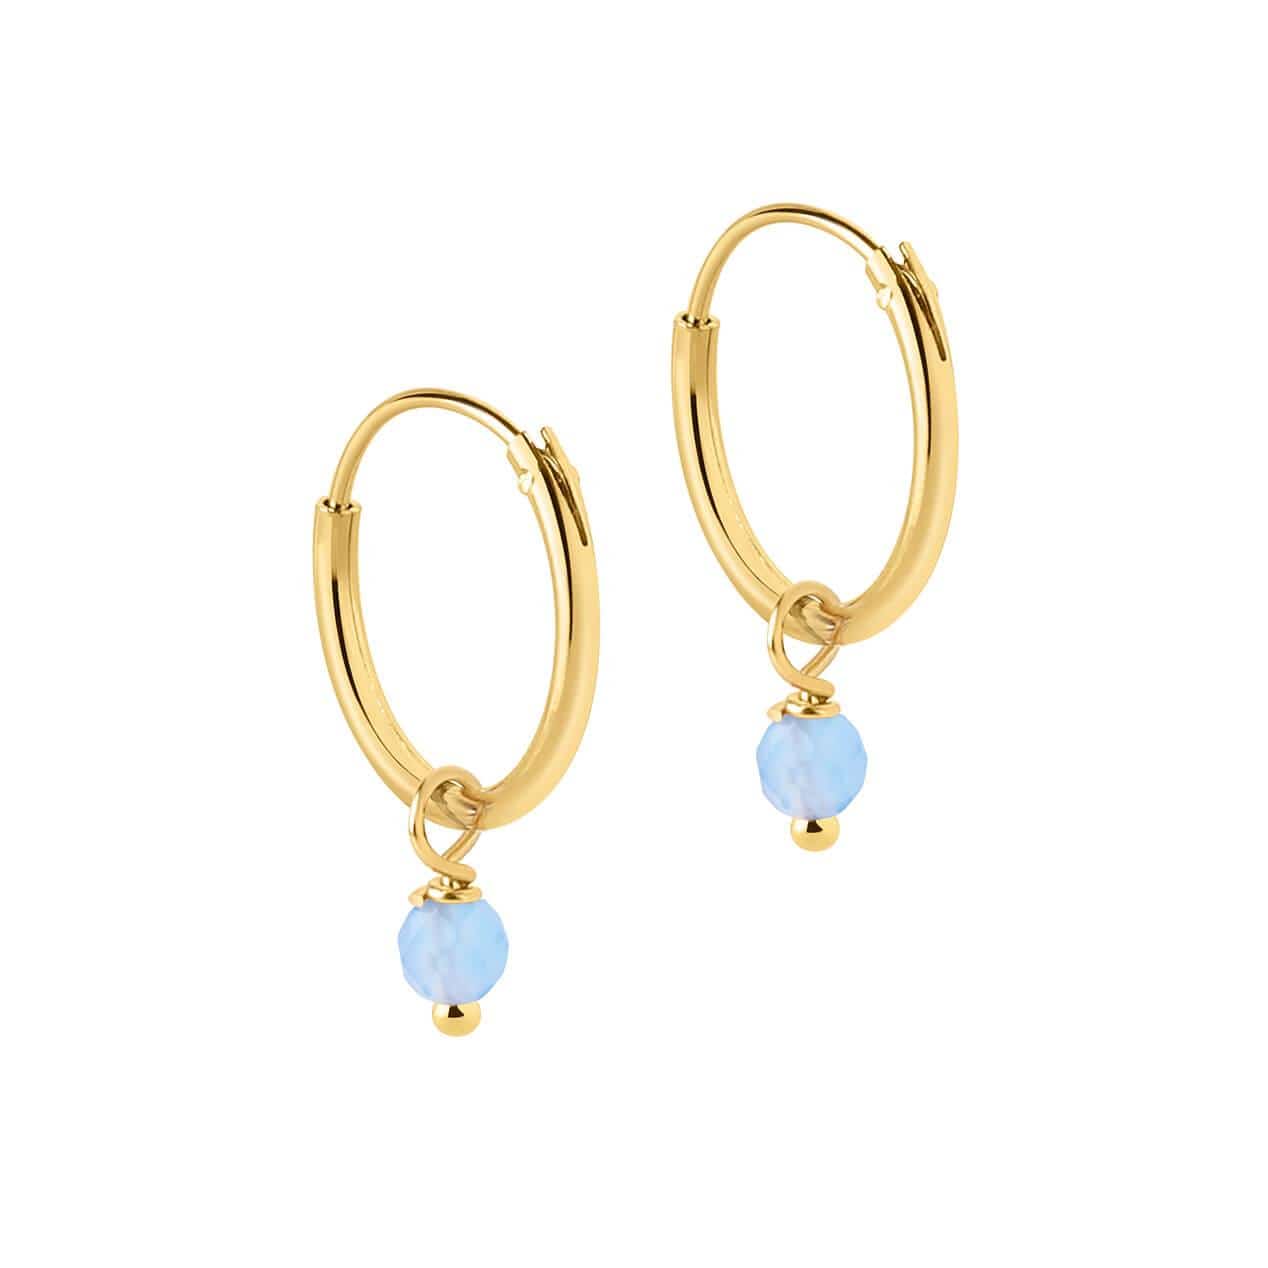 Aukmla Ear Studs Earrings Fashion Rhinestone Doubled Side Earrings for  Women and Girls (Champagne) (Silver) : Amazon.in: Jewellery